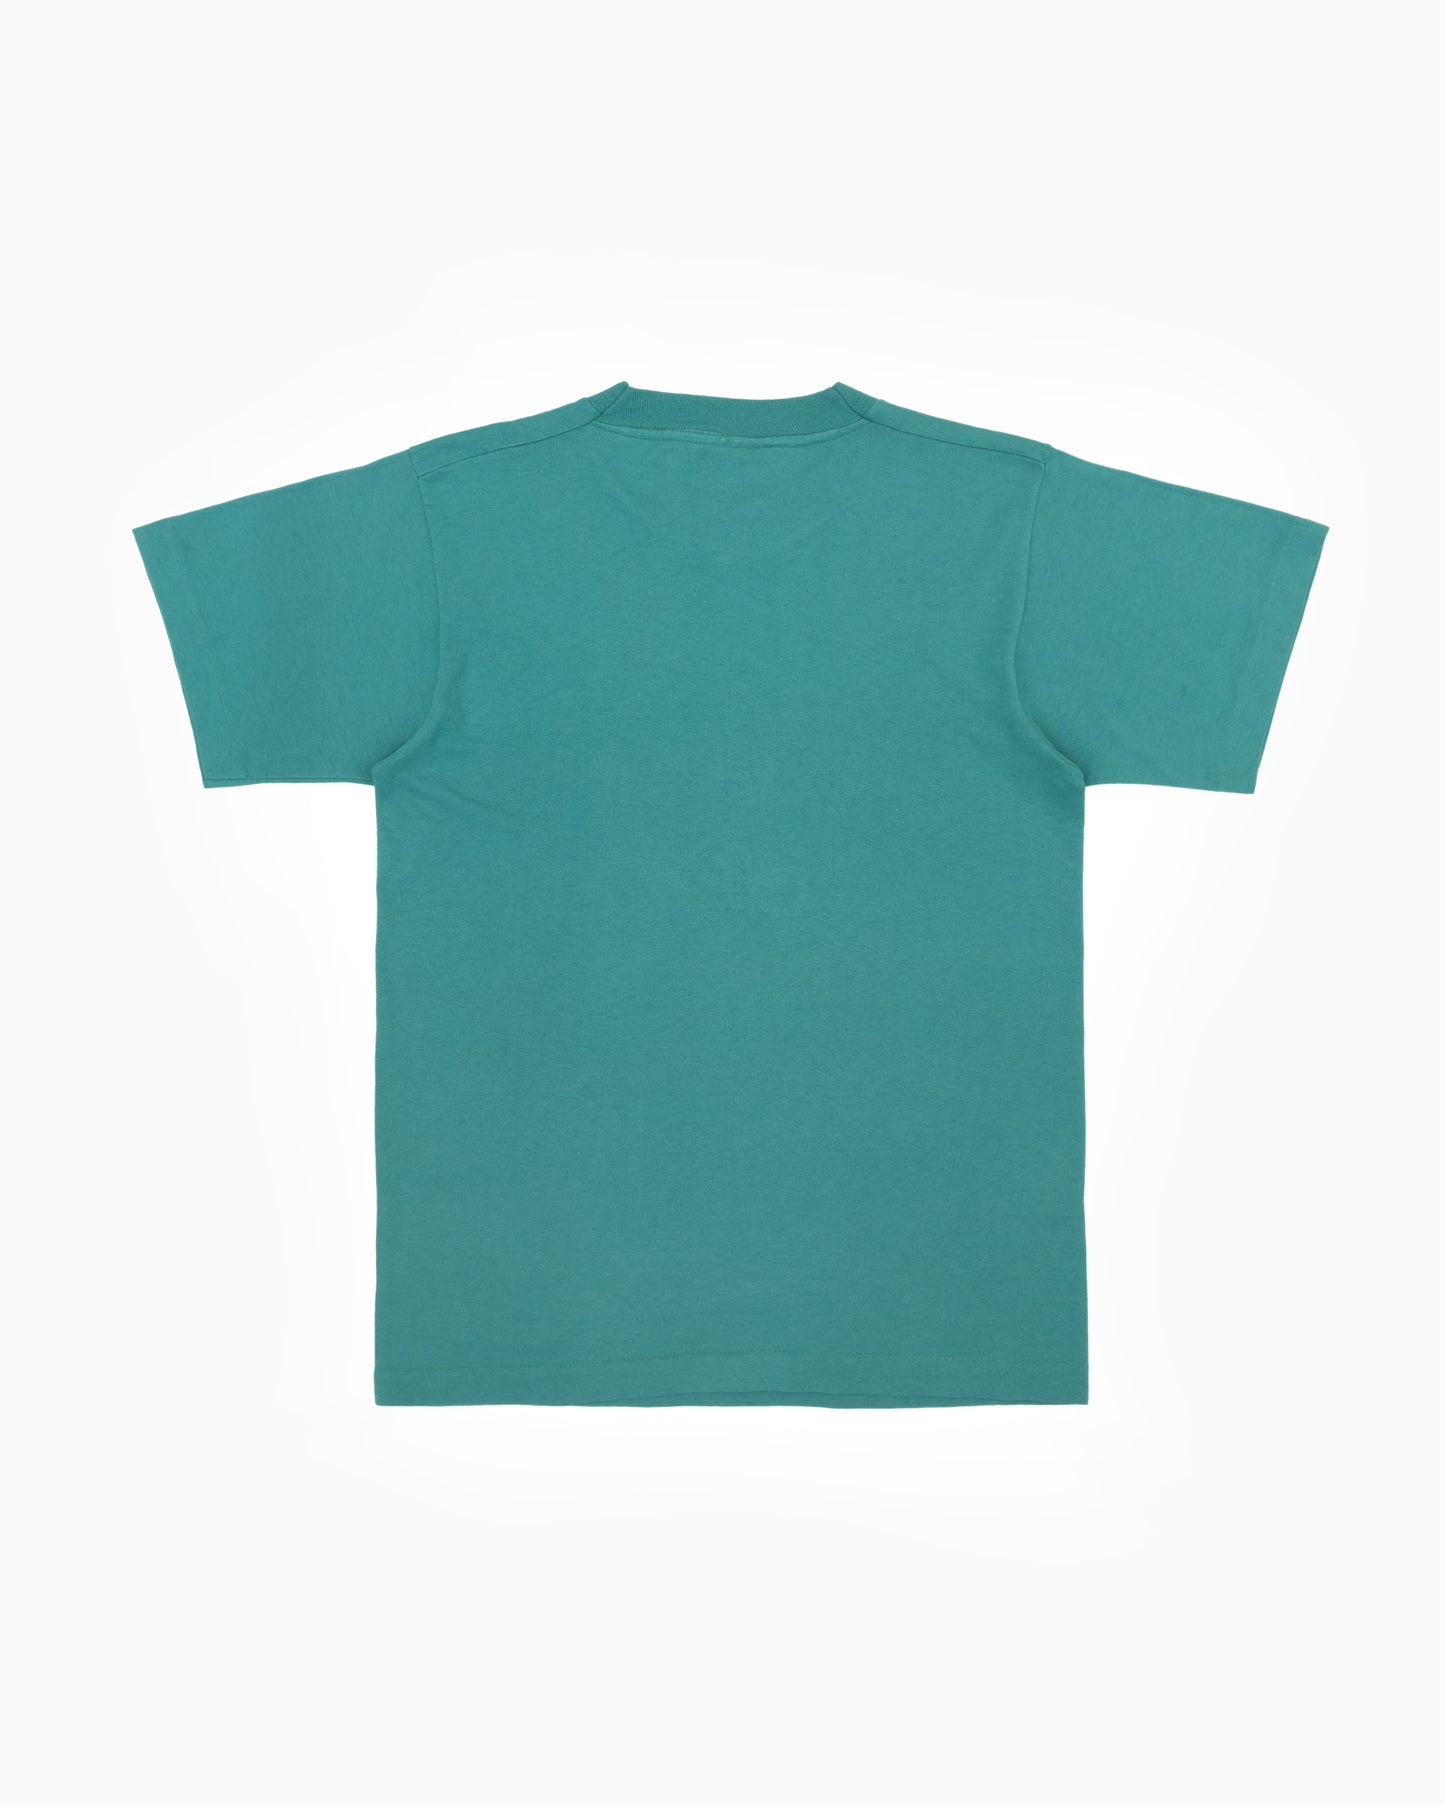 1990s Single Stitch T-Shirt